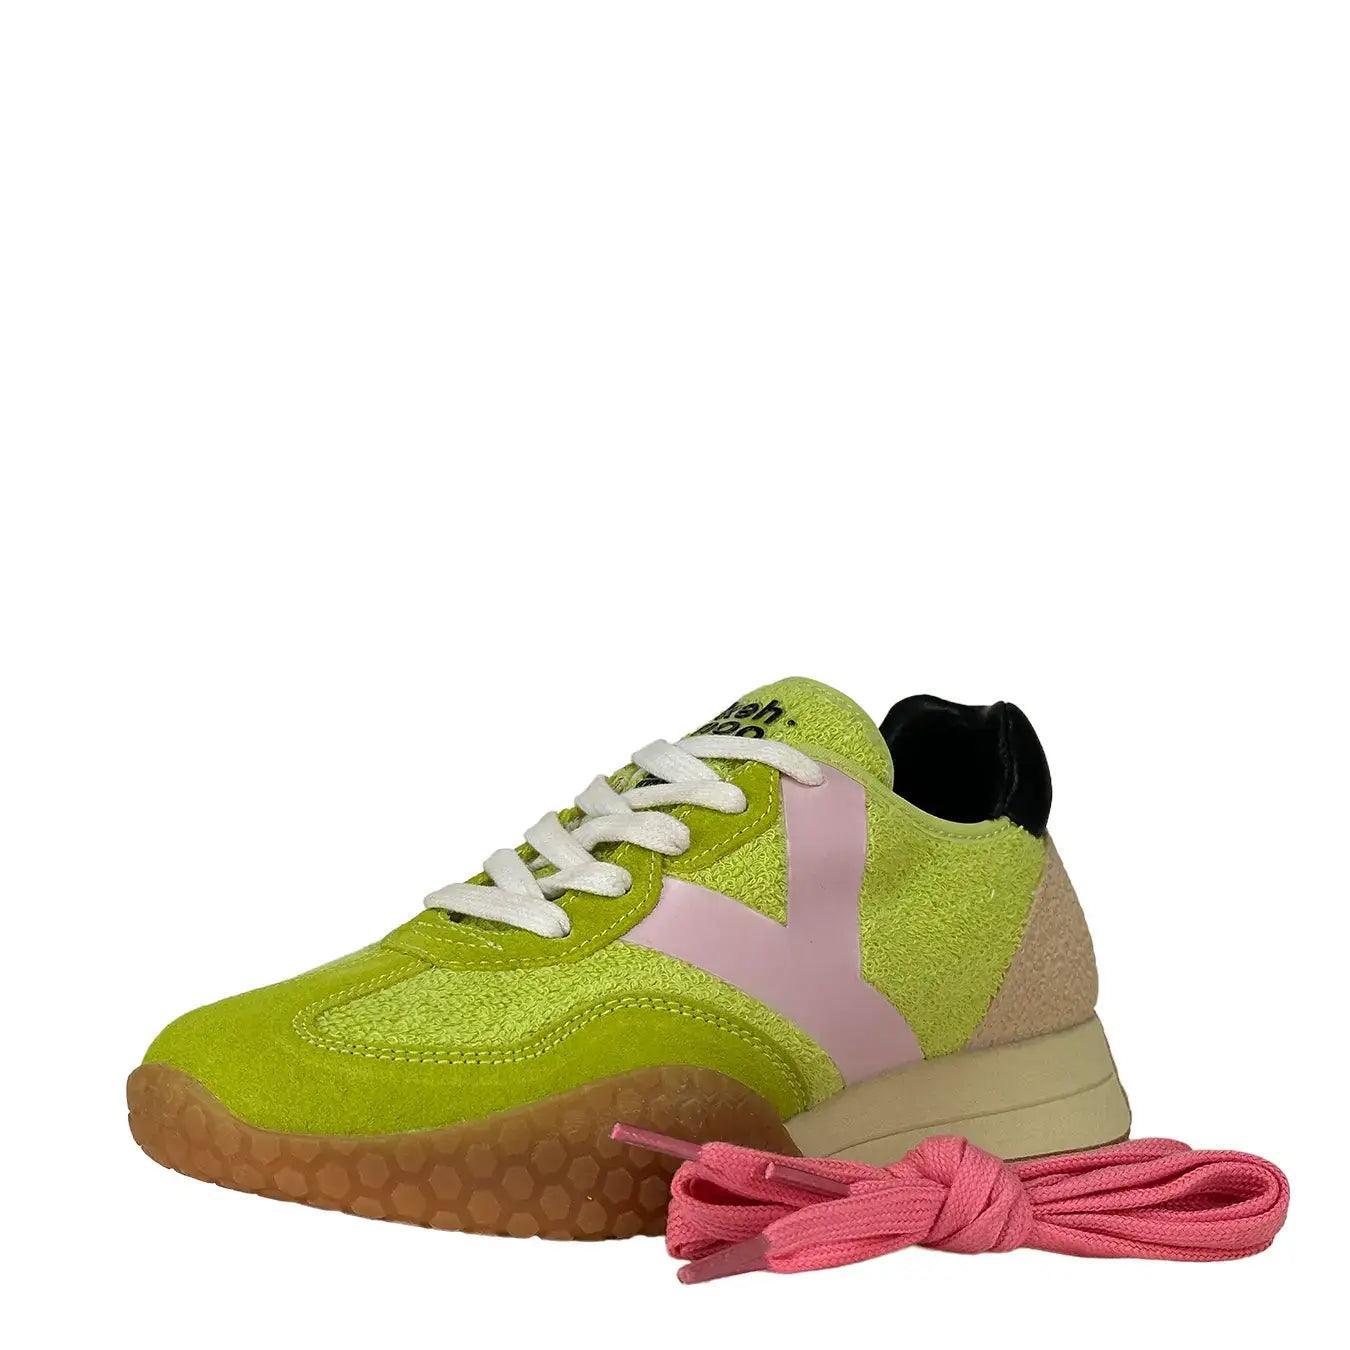 keh noo Sneakers, Kw9711, Spugna Logo Rosa, Lime Rosa, Bassiniboutique.it, 2023 p/e